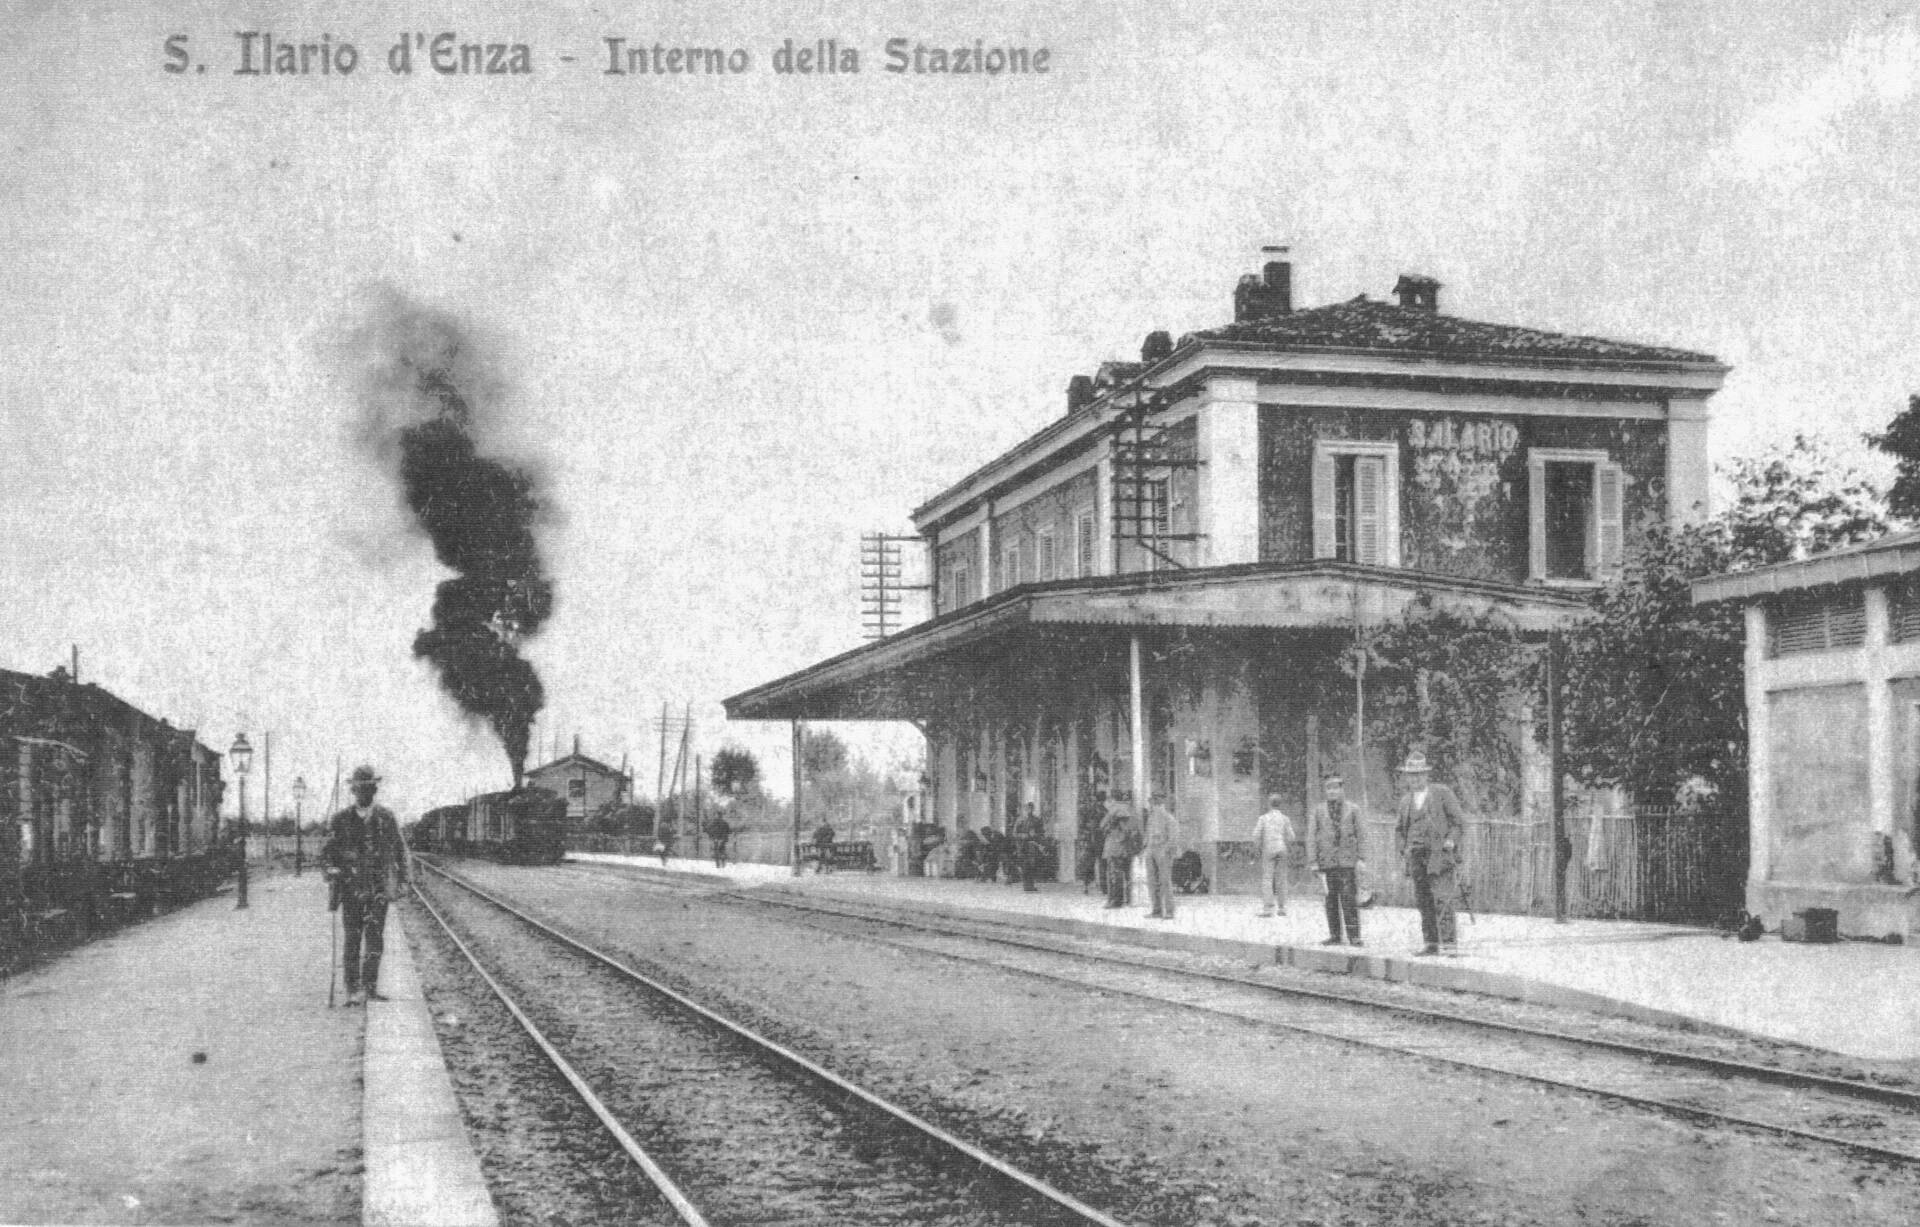 stazione sant ilario denza 1900